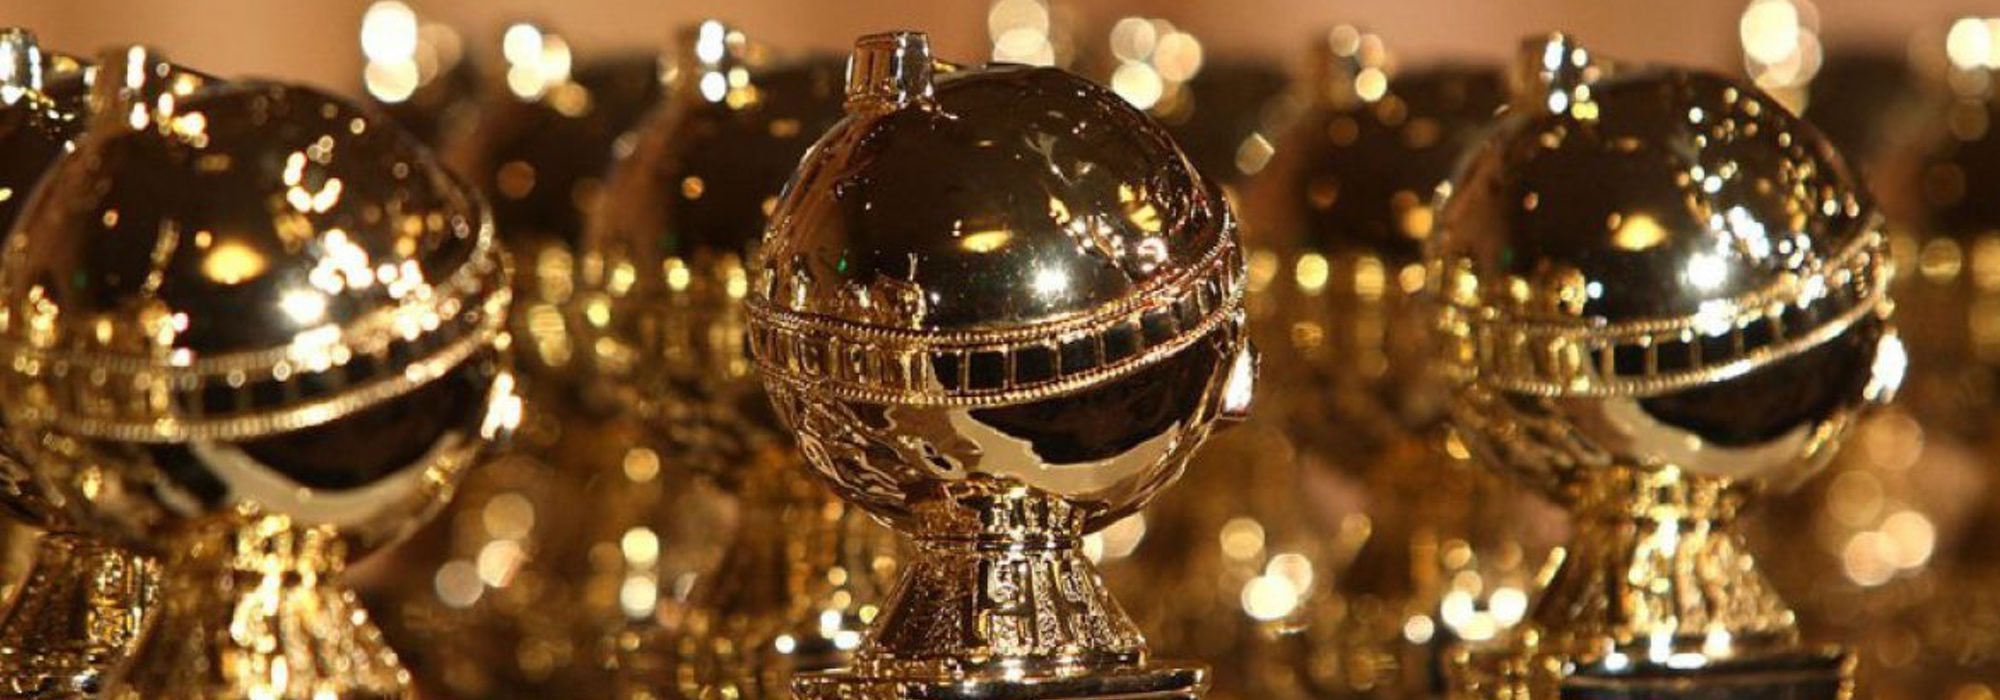 76th Golden Globe Awards